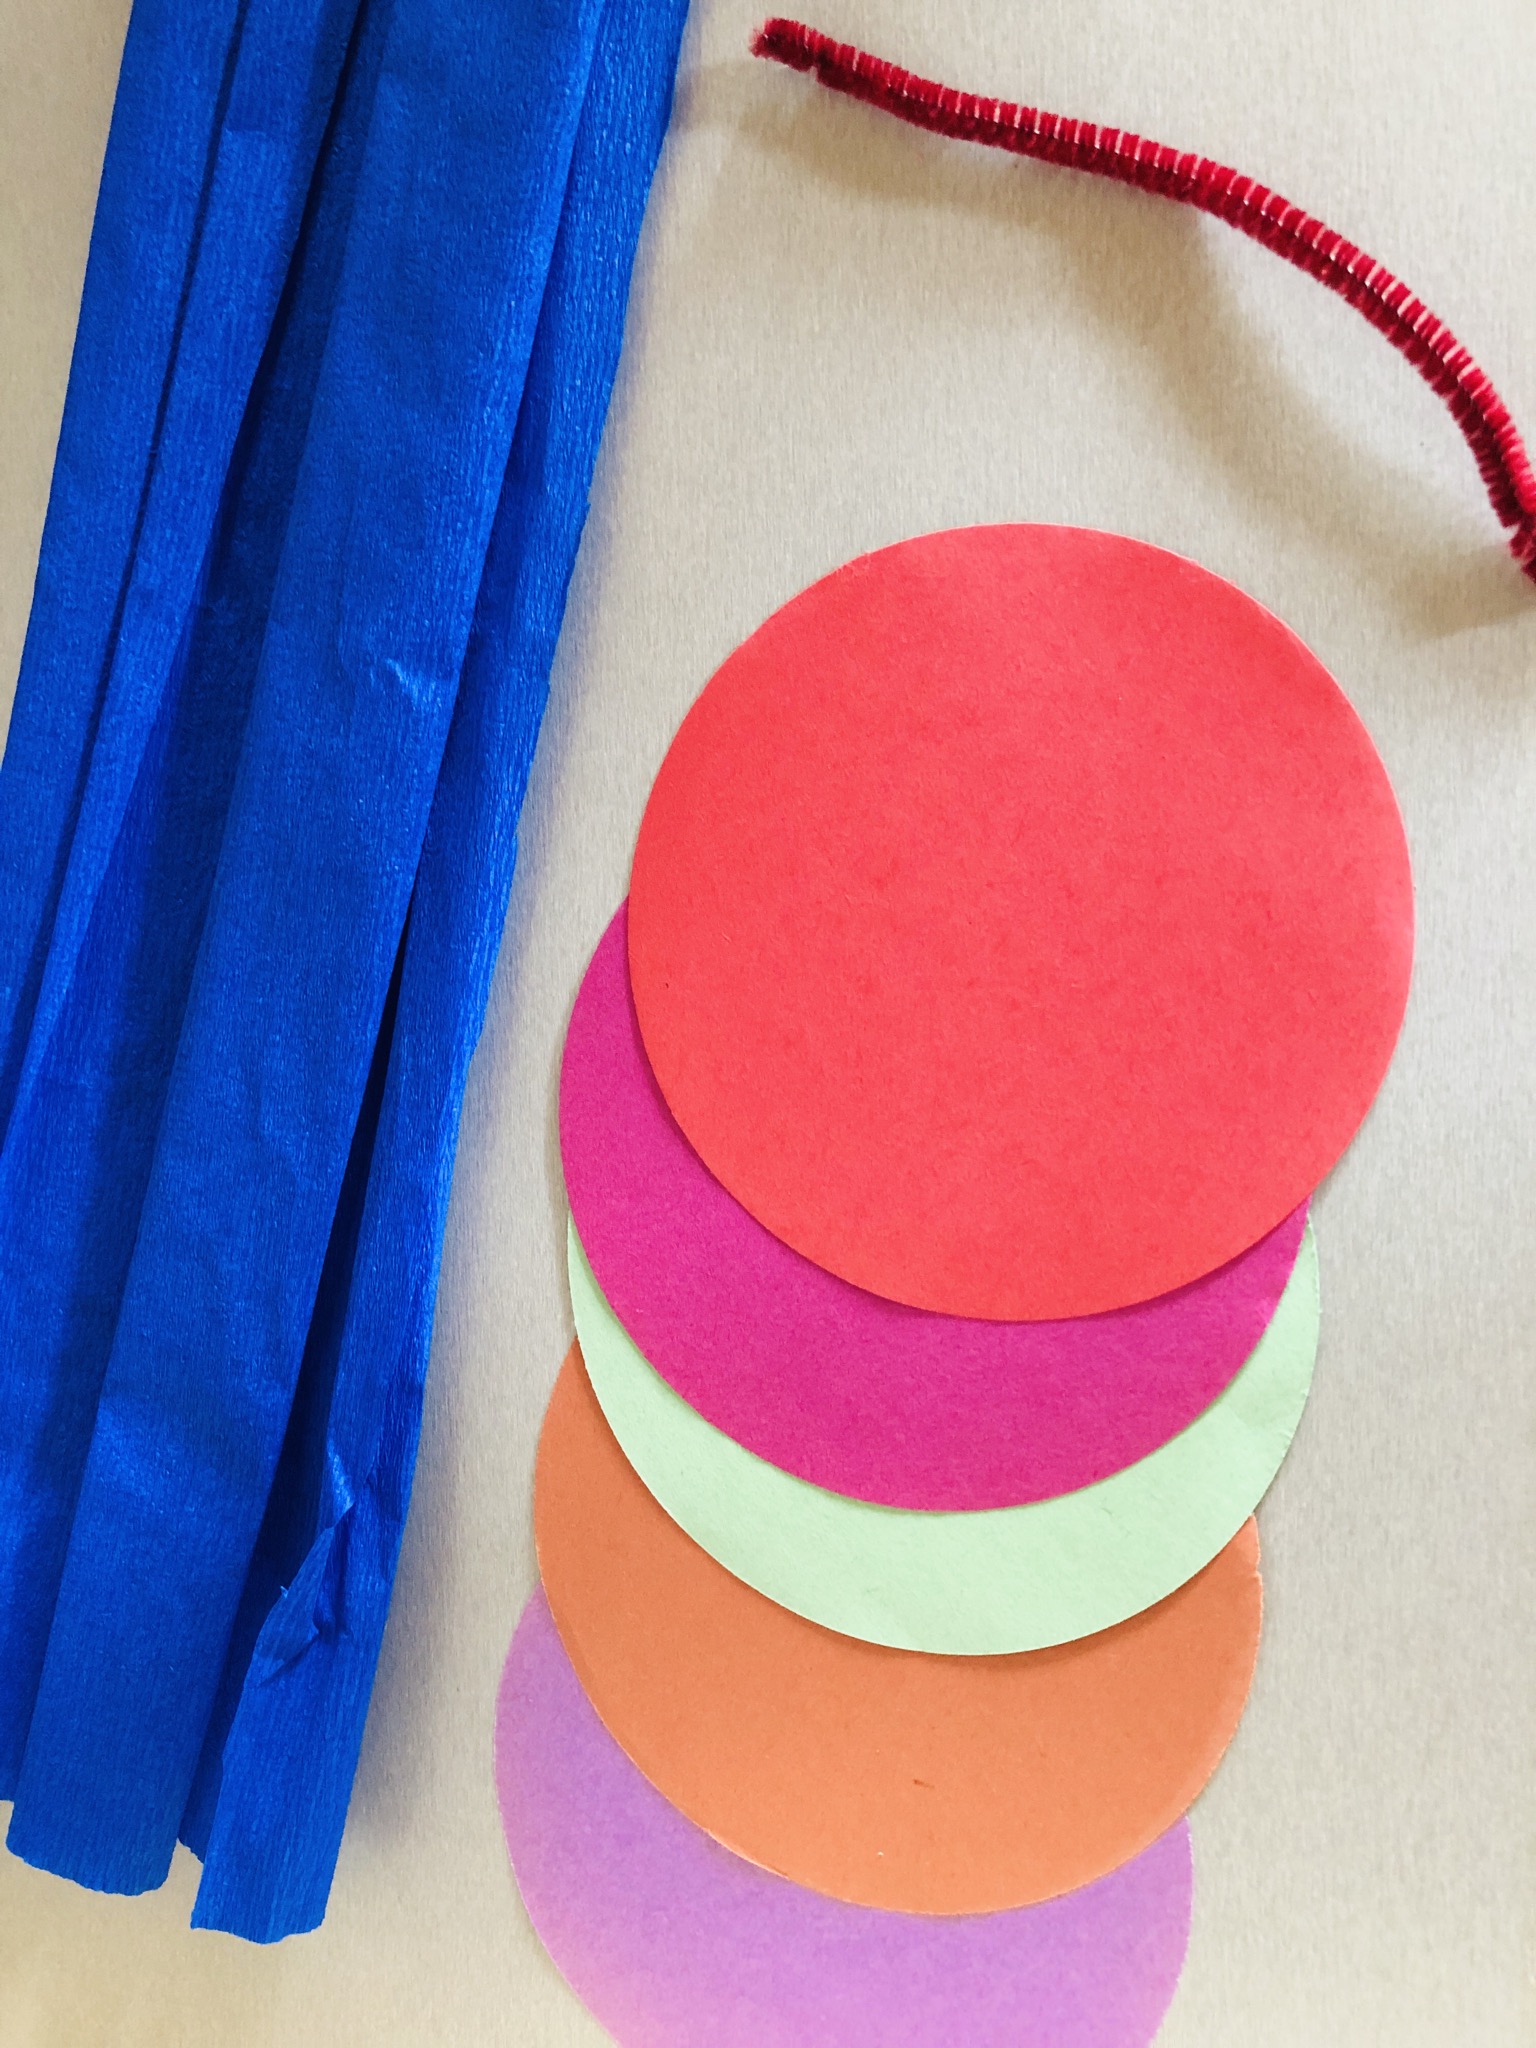 Bild zum Schritt 1 für das Bastel- und DIY-Abenteuer für Kinder: 'Runde Faltpapiere in verschiedenen Farben und Pfeifenputzer bereit legen.'